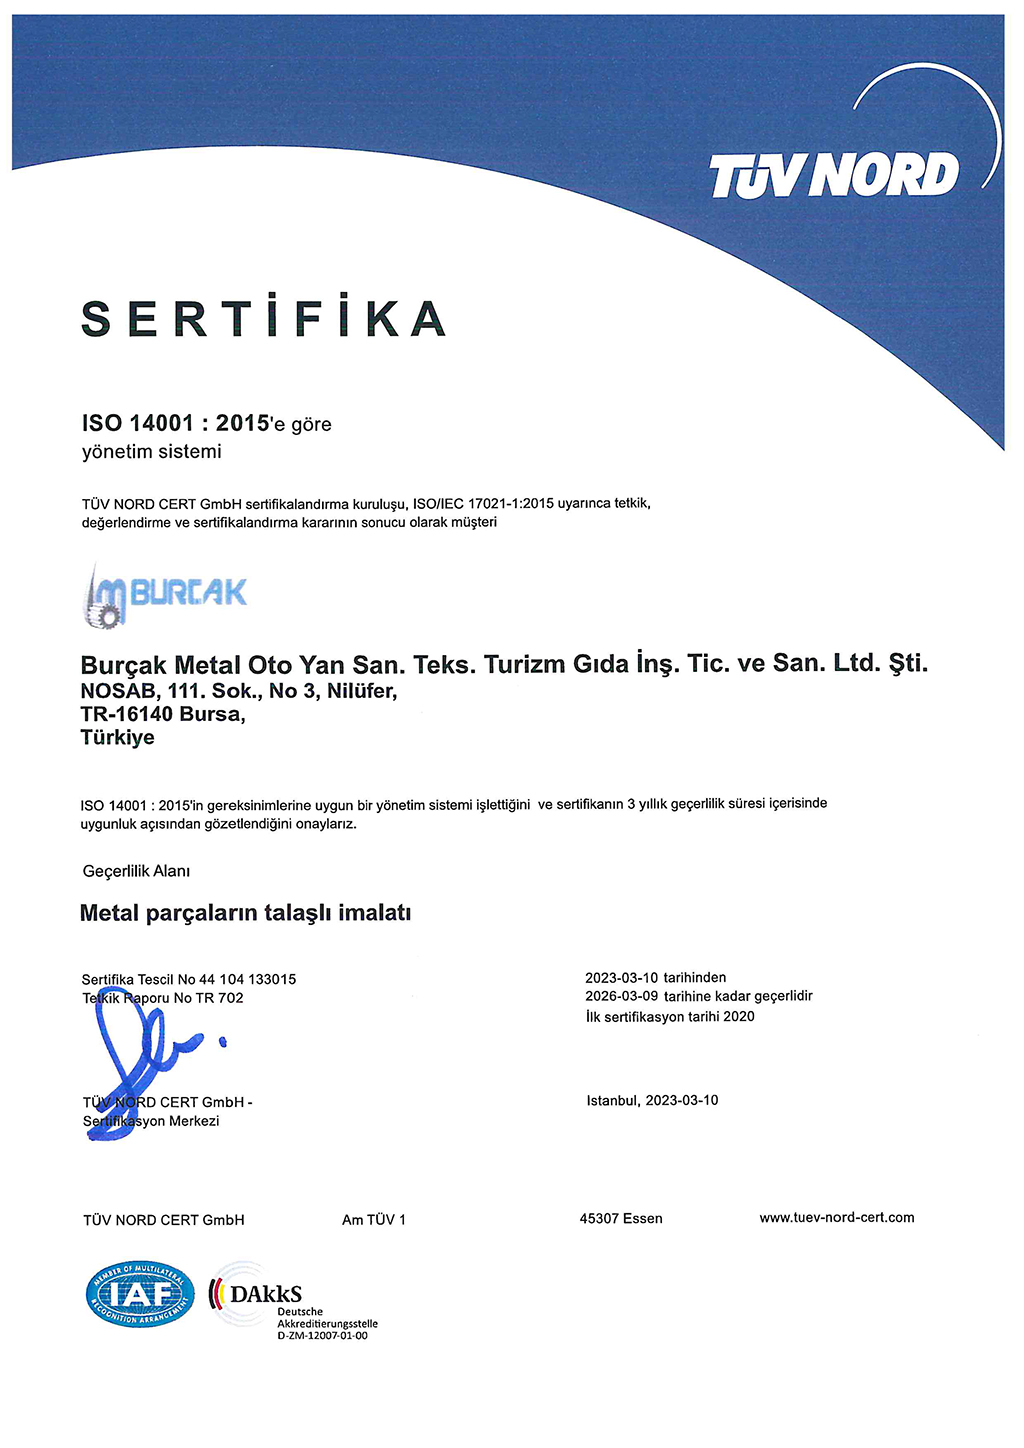 ISO 14001:2015'e göre yönetim sistemi